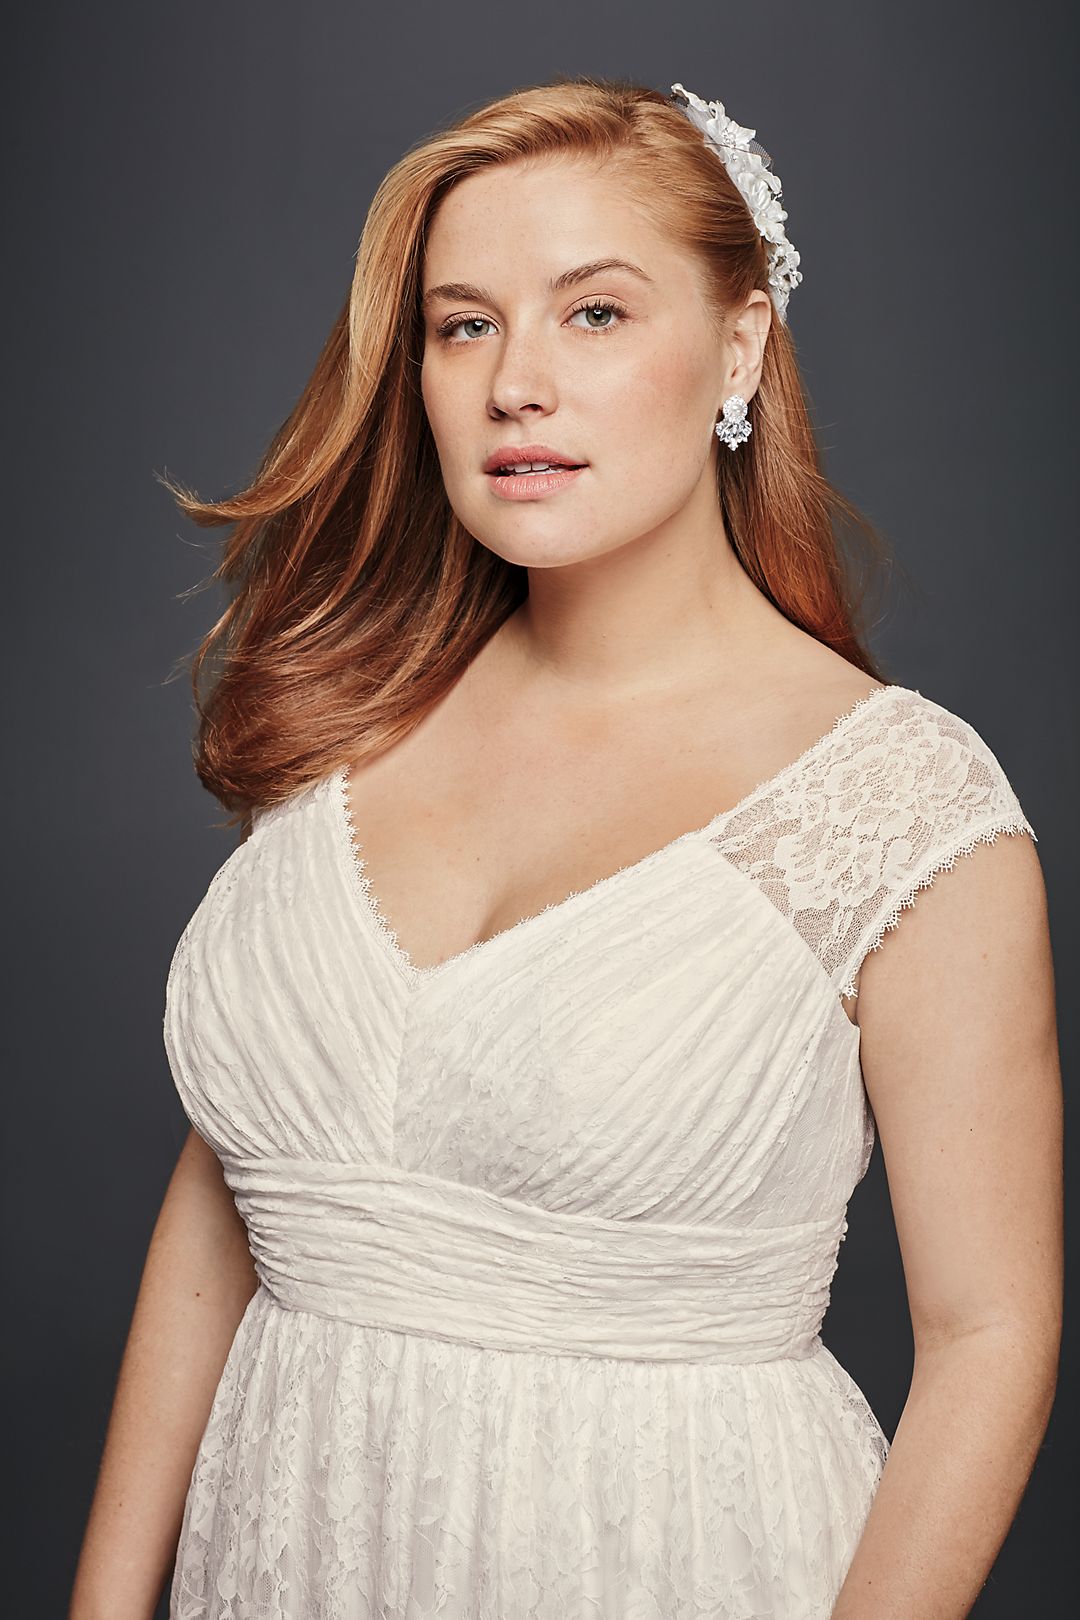 Lace Sheath Wedding Dress with Illusion Cap Sleeve Image 3